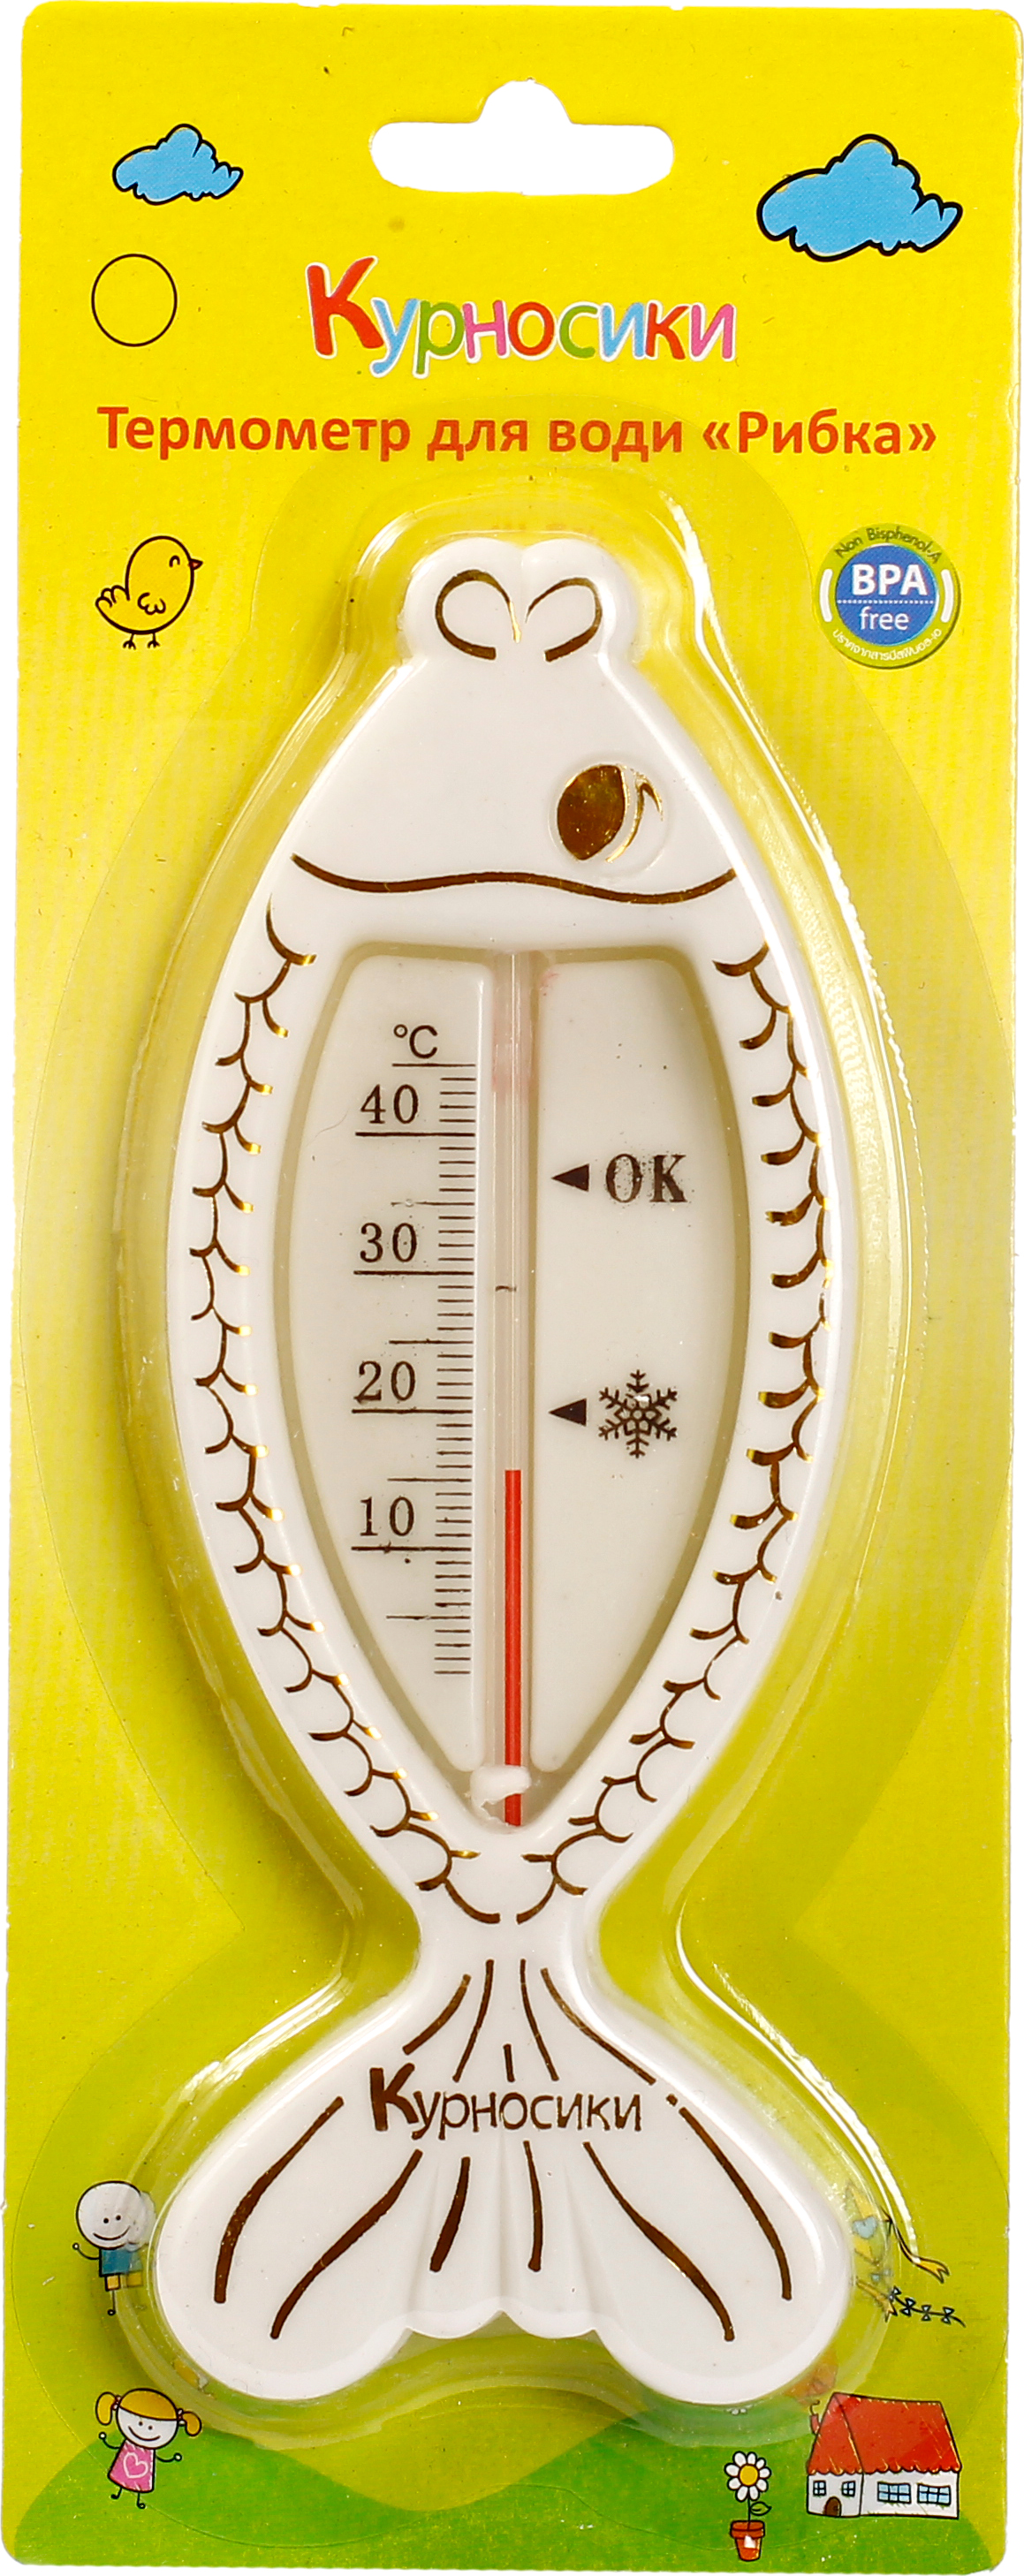 Термометр для води Курносики Рибка, білий (7086 біл) - фото 2